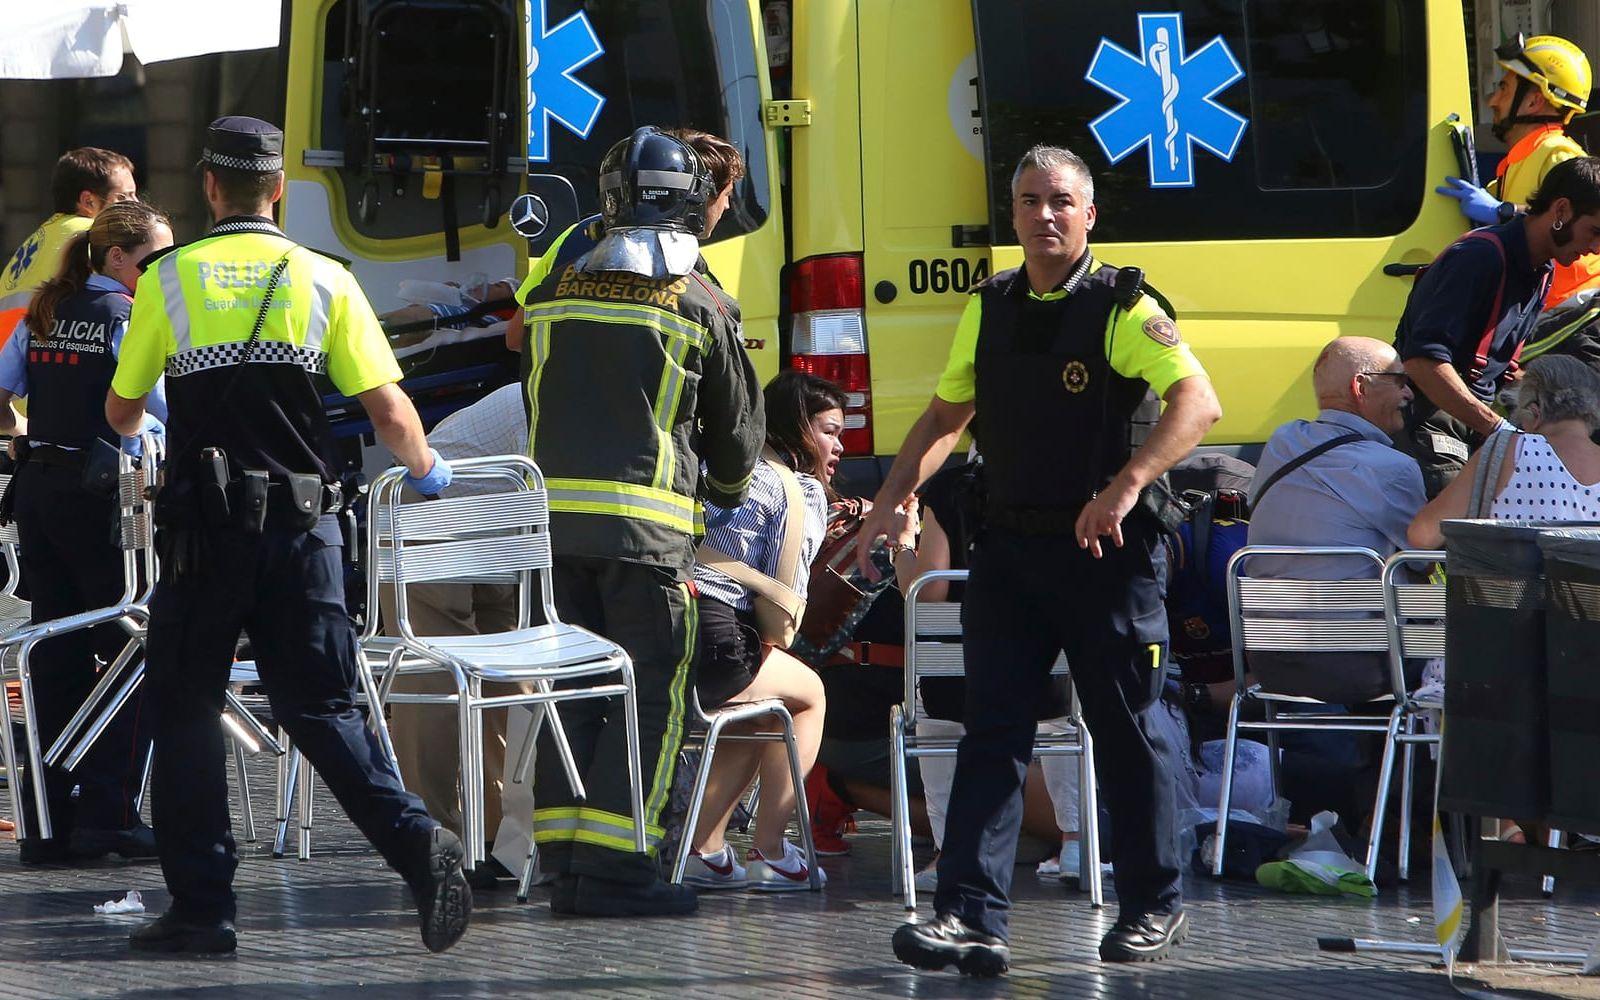 TERRORATTACK. Enligt spanska myndigheter var det en terrorattack som utspelade sig på Las Rambla på torsdagen. Bild: Oriol Duran/AP